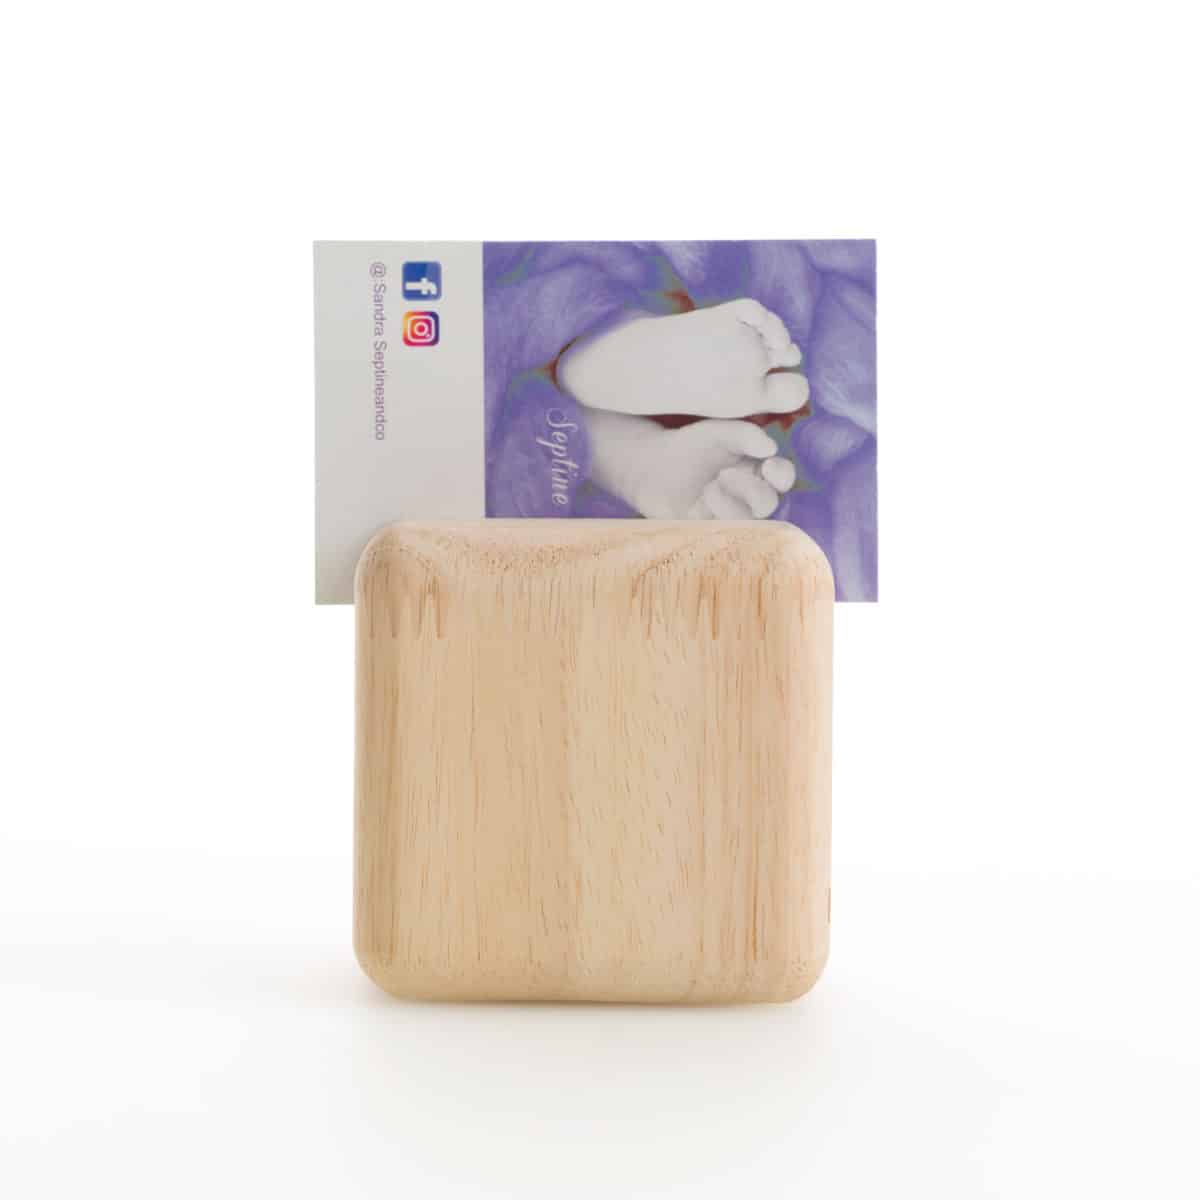 qr cube en bois, fabrication française personnalisable, restaurants ou carte de visite